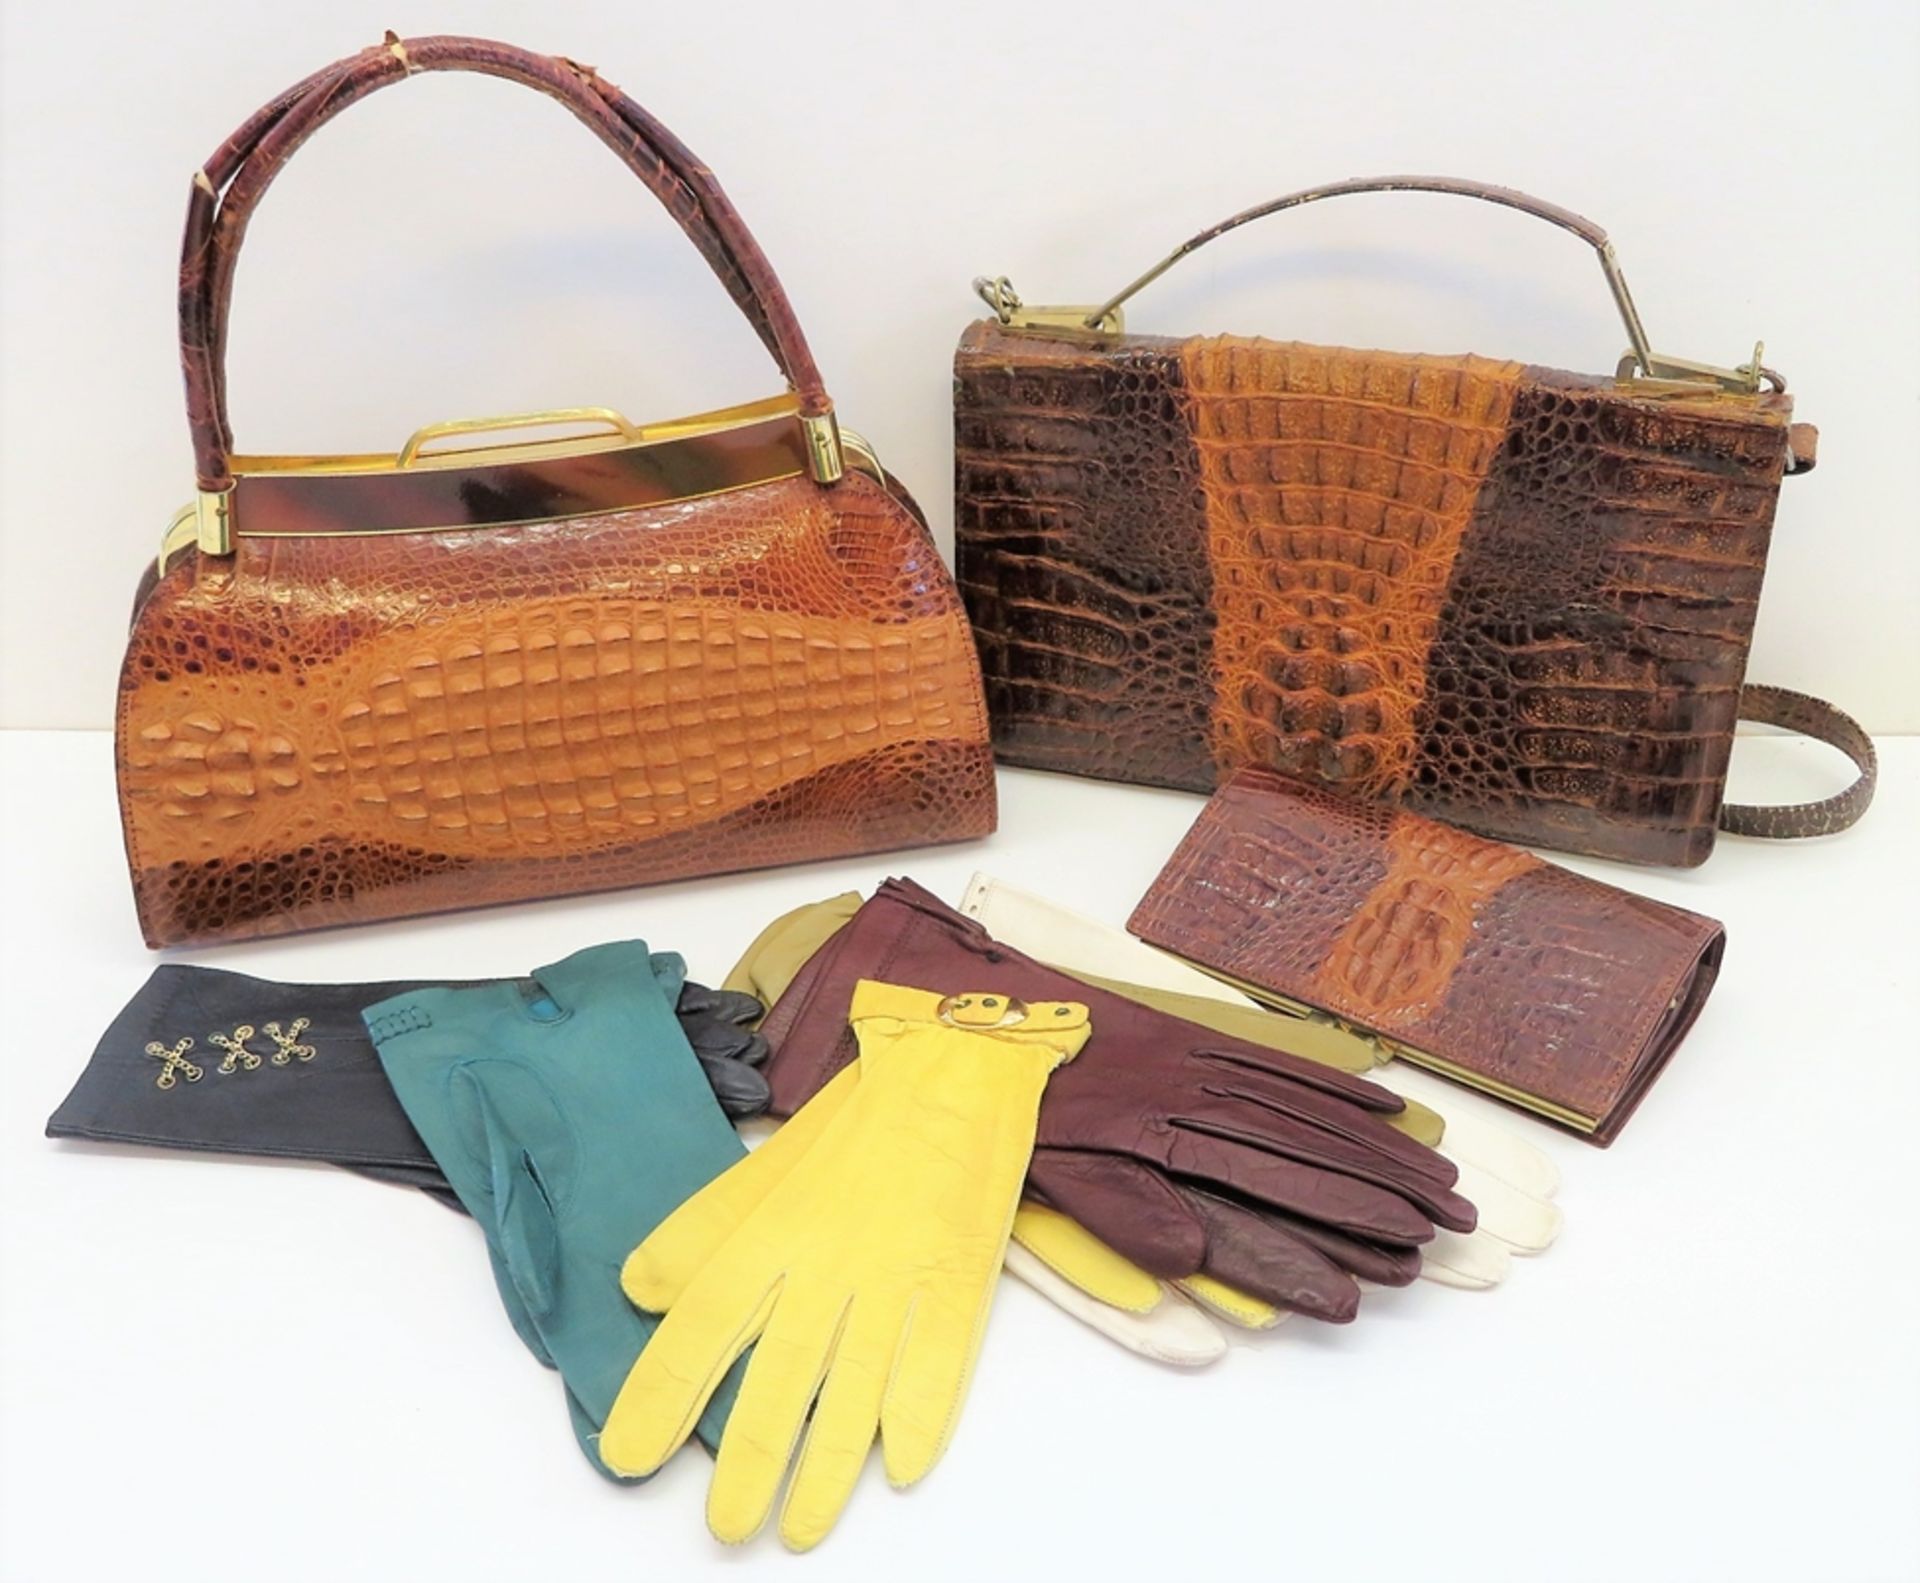 2 Vintage Handtaschen, Geldbörse und 6 diverse Paar Lederhandschuhe, 1950/60er Jahre, Taschen und G